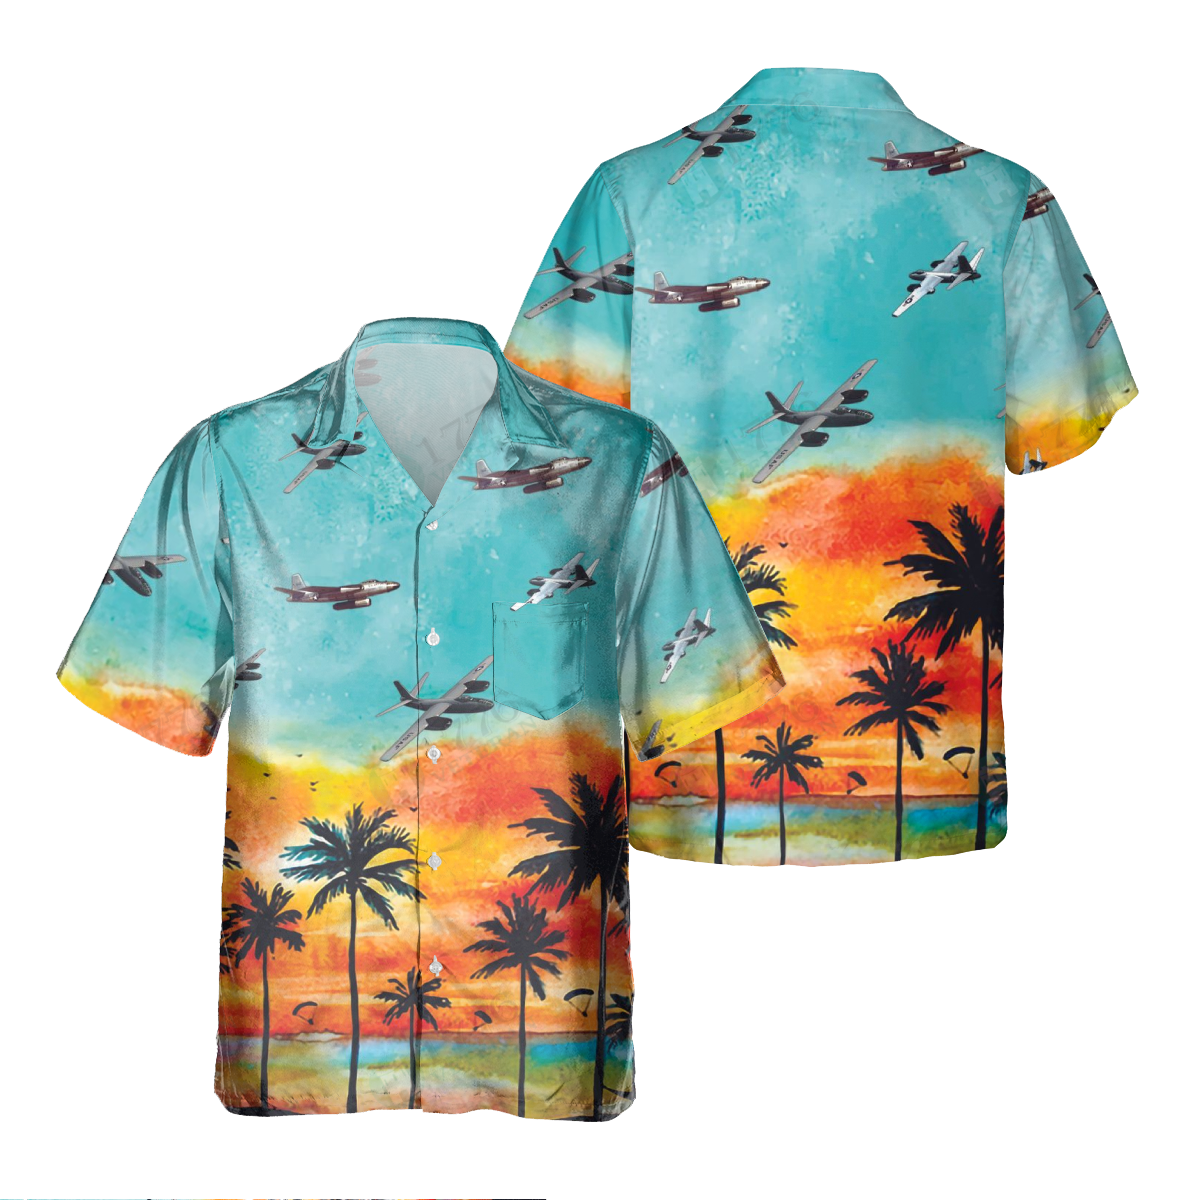 B-45 TORNADO Pocket Hawaiian Shirt/ Hawaiian Shirt for Men Dad Veteran/ Patriot Day